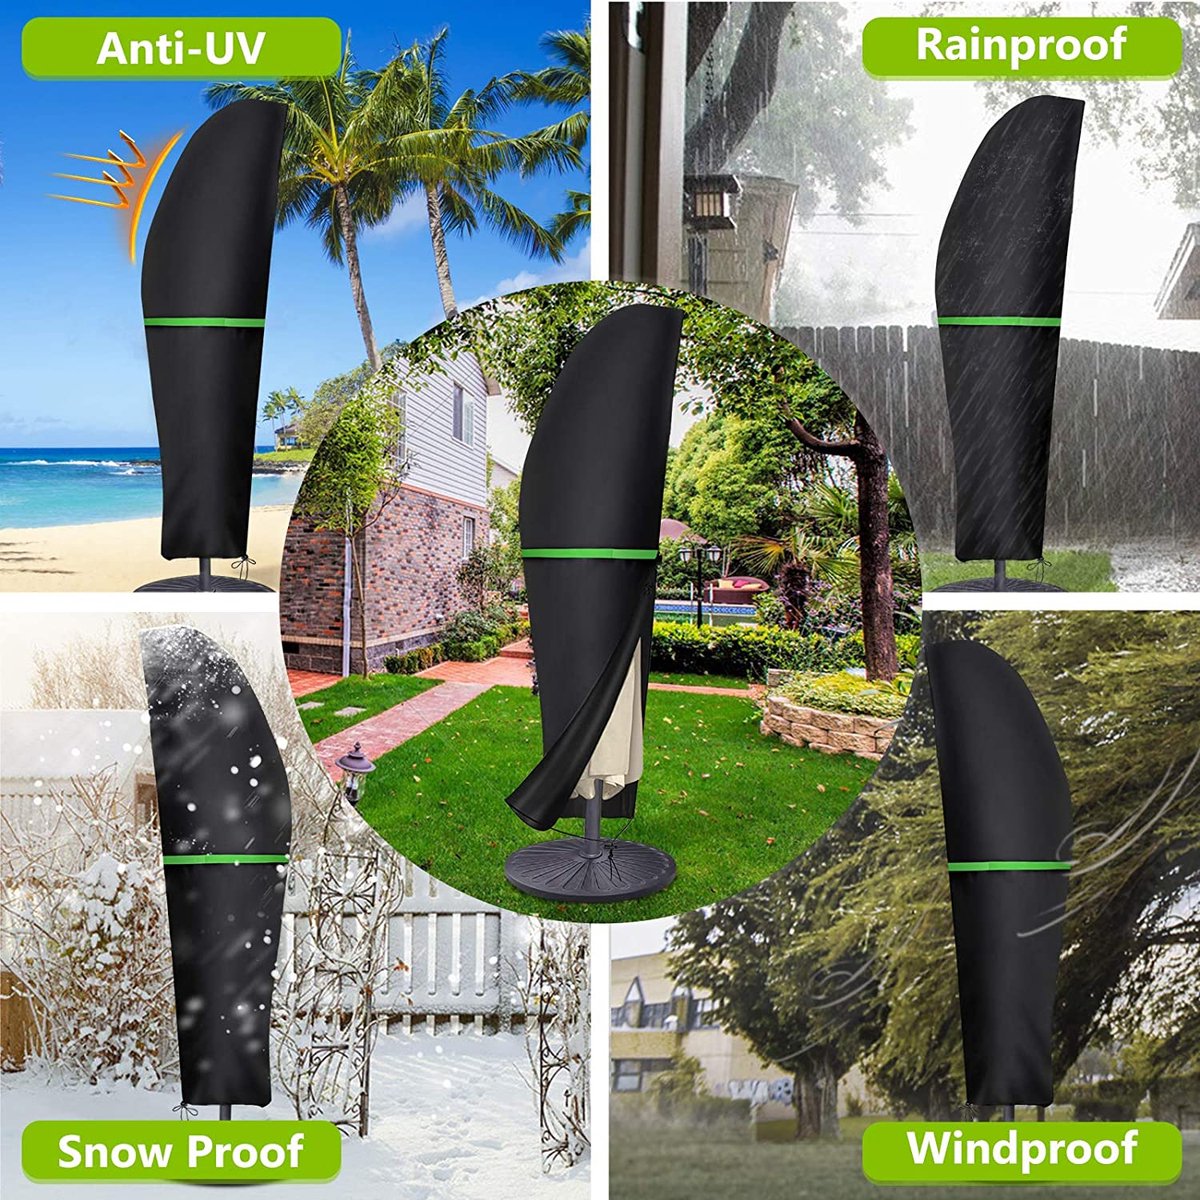 Gemitto beschermhoes voor parasol met stang, voor parasol van 2-4 meter diameter, weerbestendig, uv-bestendig, winddicht en sneeuwbestendig, voor hangende parasol buiten, 210D.